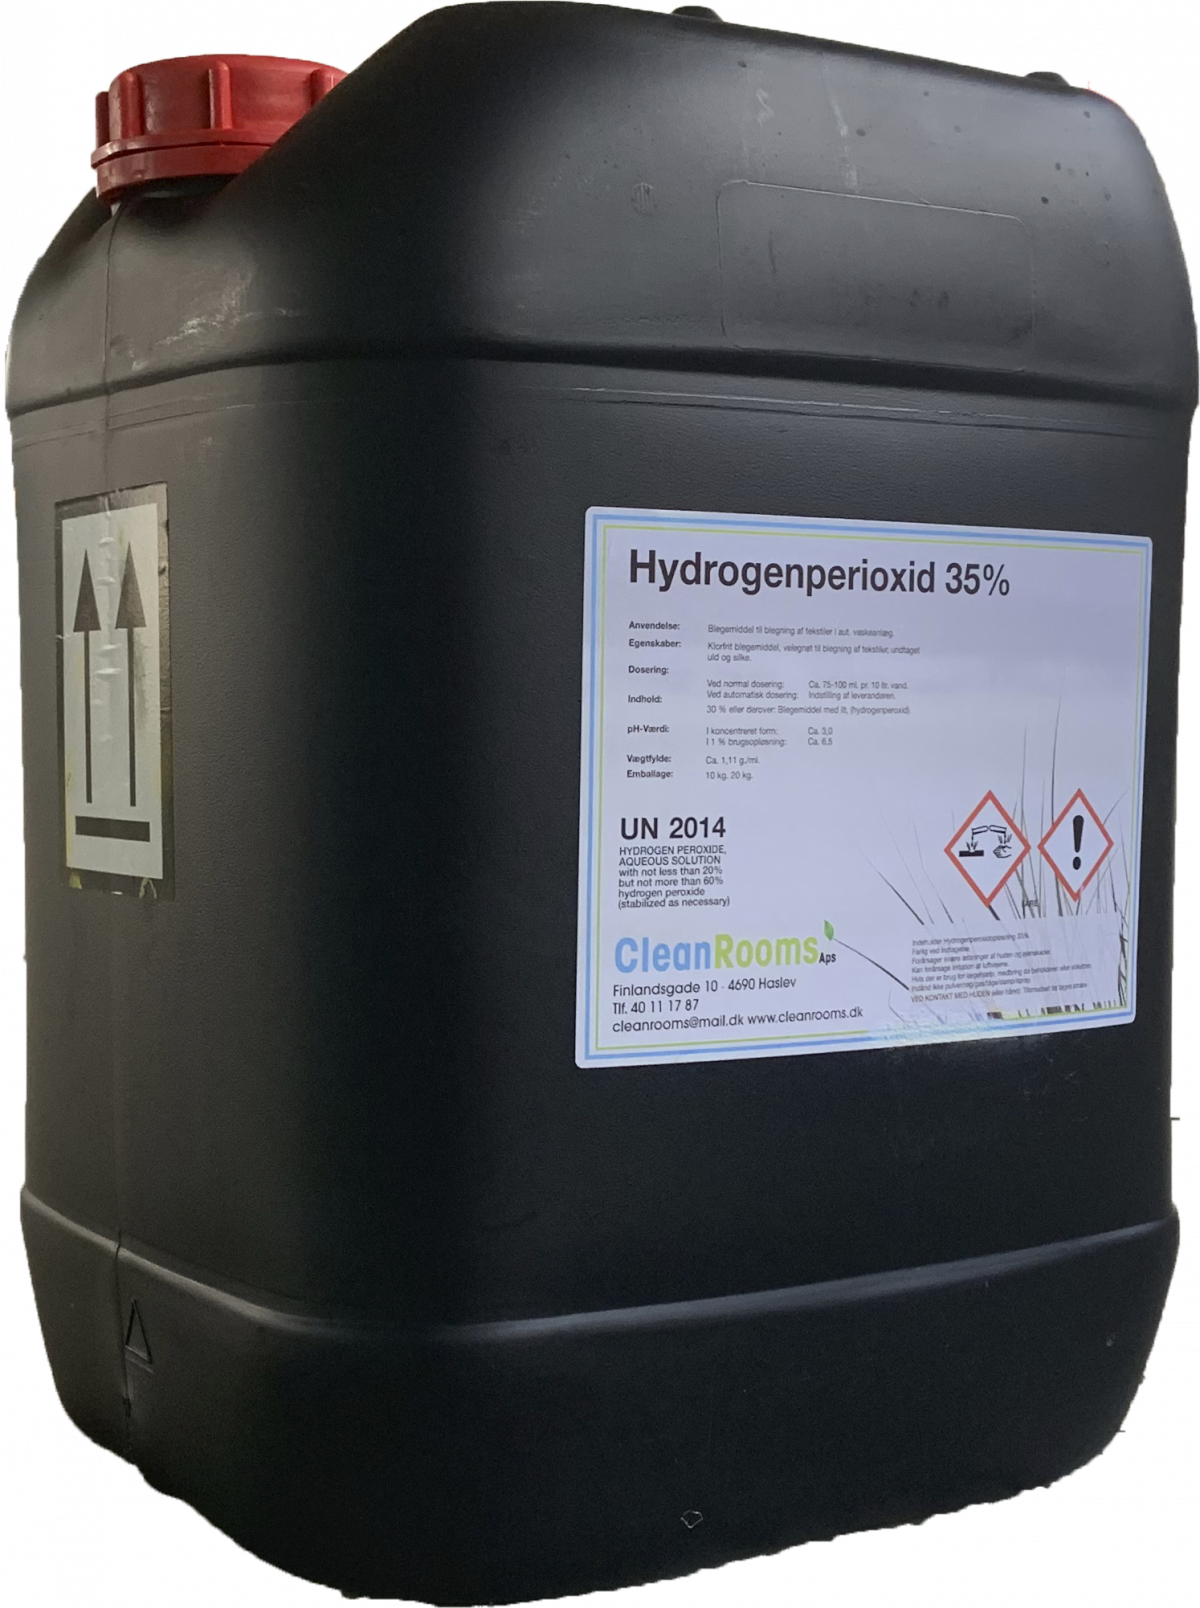 idiom dyr sælge Hydrogenperoxid 35% 22 kg - Kemi til svømmehaller, svømmebassiner og spa -  Cleanrooms ApS